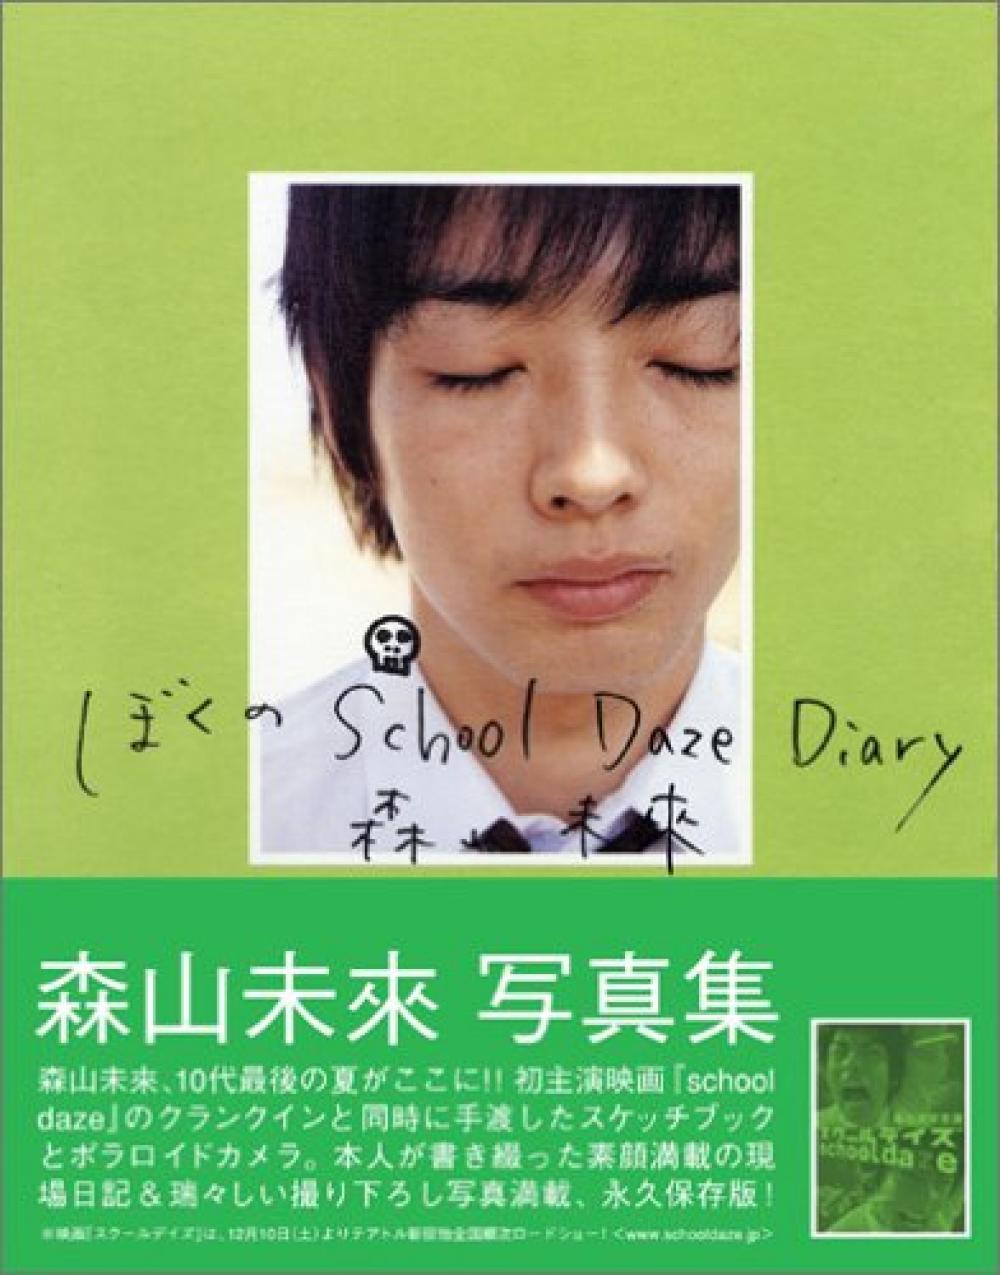 森山未來 写真集「ぼくのSchool Daze Diary」